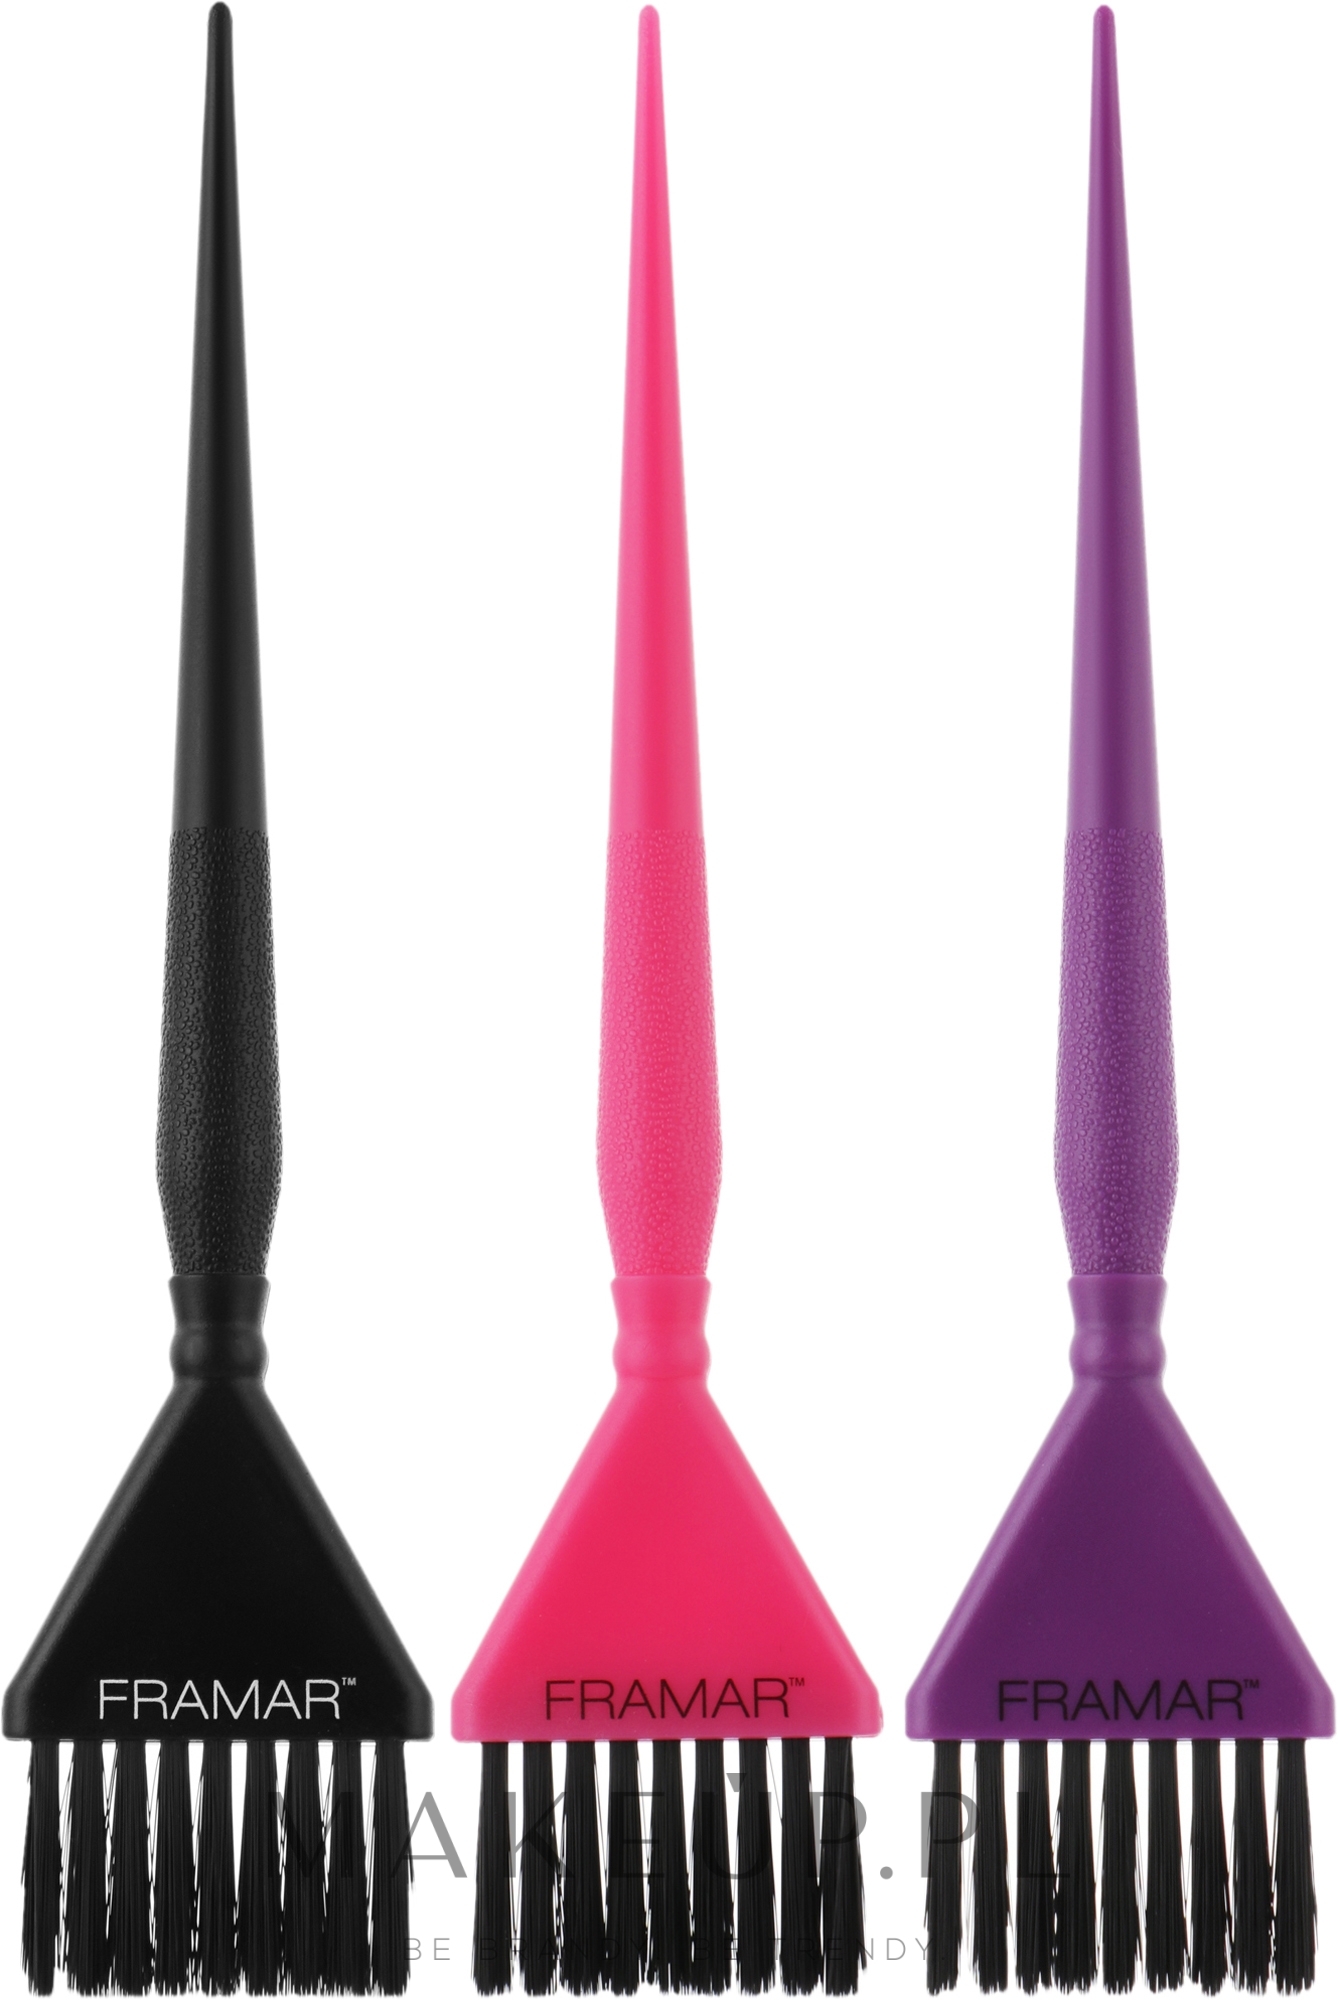 Zestaw pędzli do farbowania, czarny, fioletowy, różowy - Framar Needle Coloring Brush — Zdjęcie 3 szt.